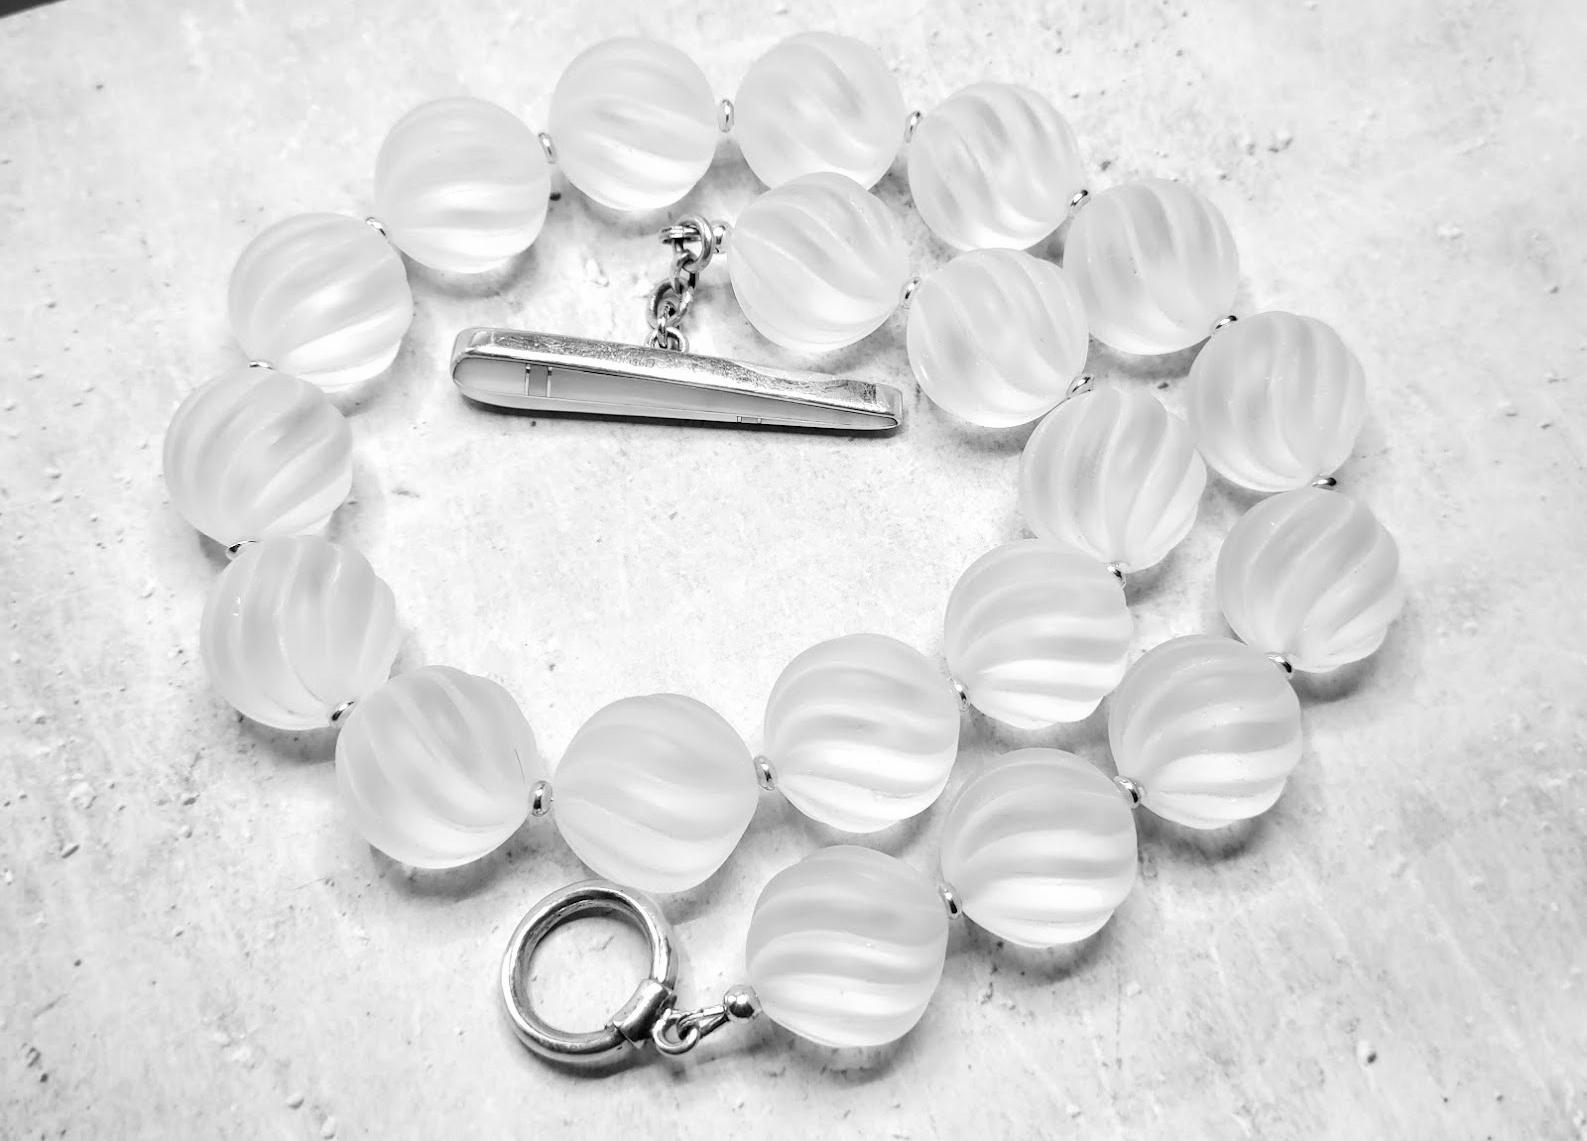 Collier de perles en cristal de roche véritable sculpté et tourbillonnant avec fermoir à bascule en nacre

La longueur du collier est de 43 cm. La taille des perles sculptées en tourbillon est de 18 mm.
Les perles sont comme de la glace lisse et